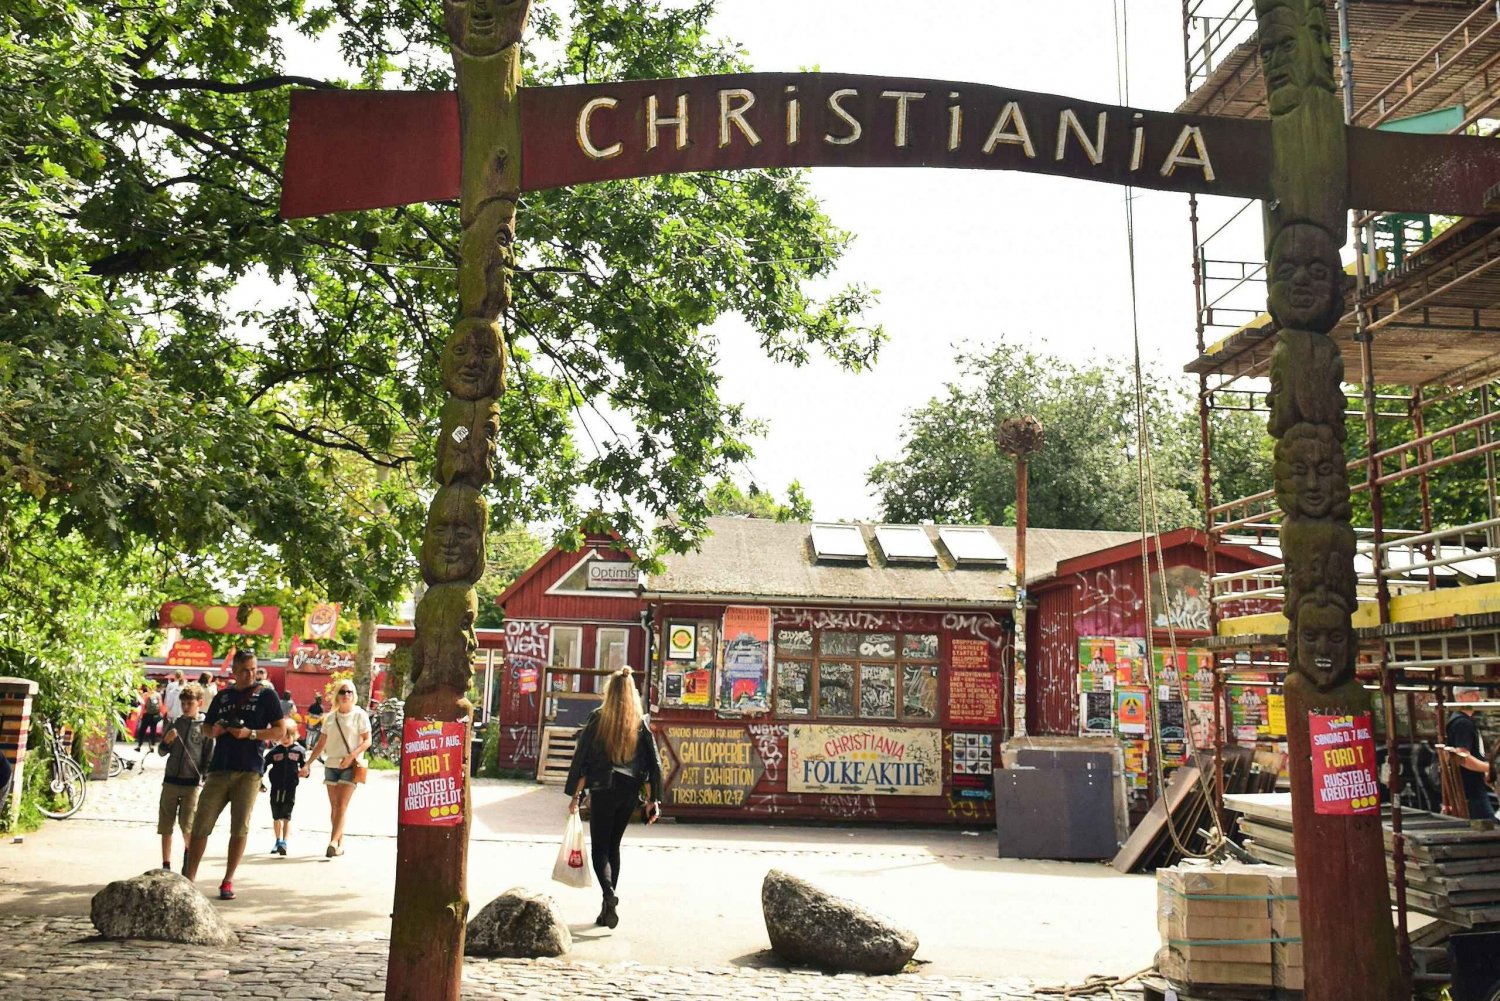 Copenhague: Christiania e Christianshavn: excursão a pé guiada